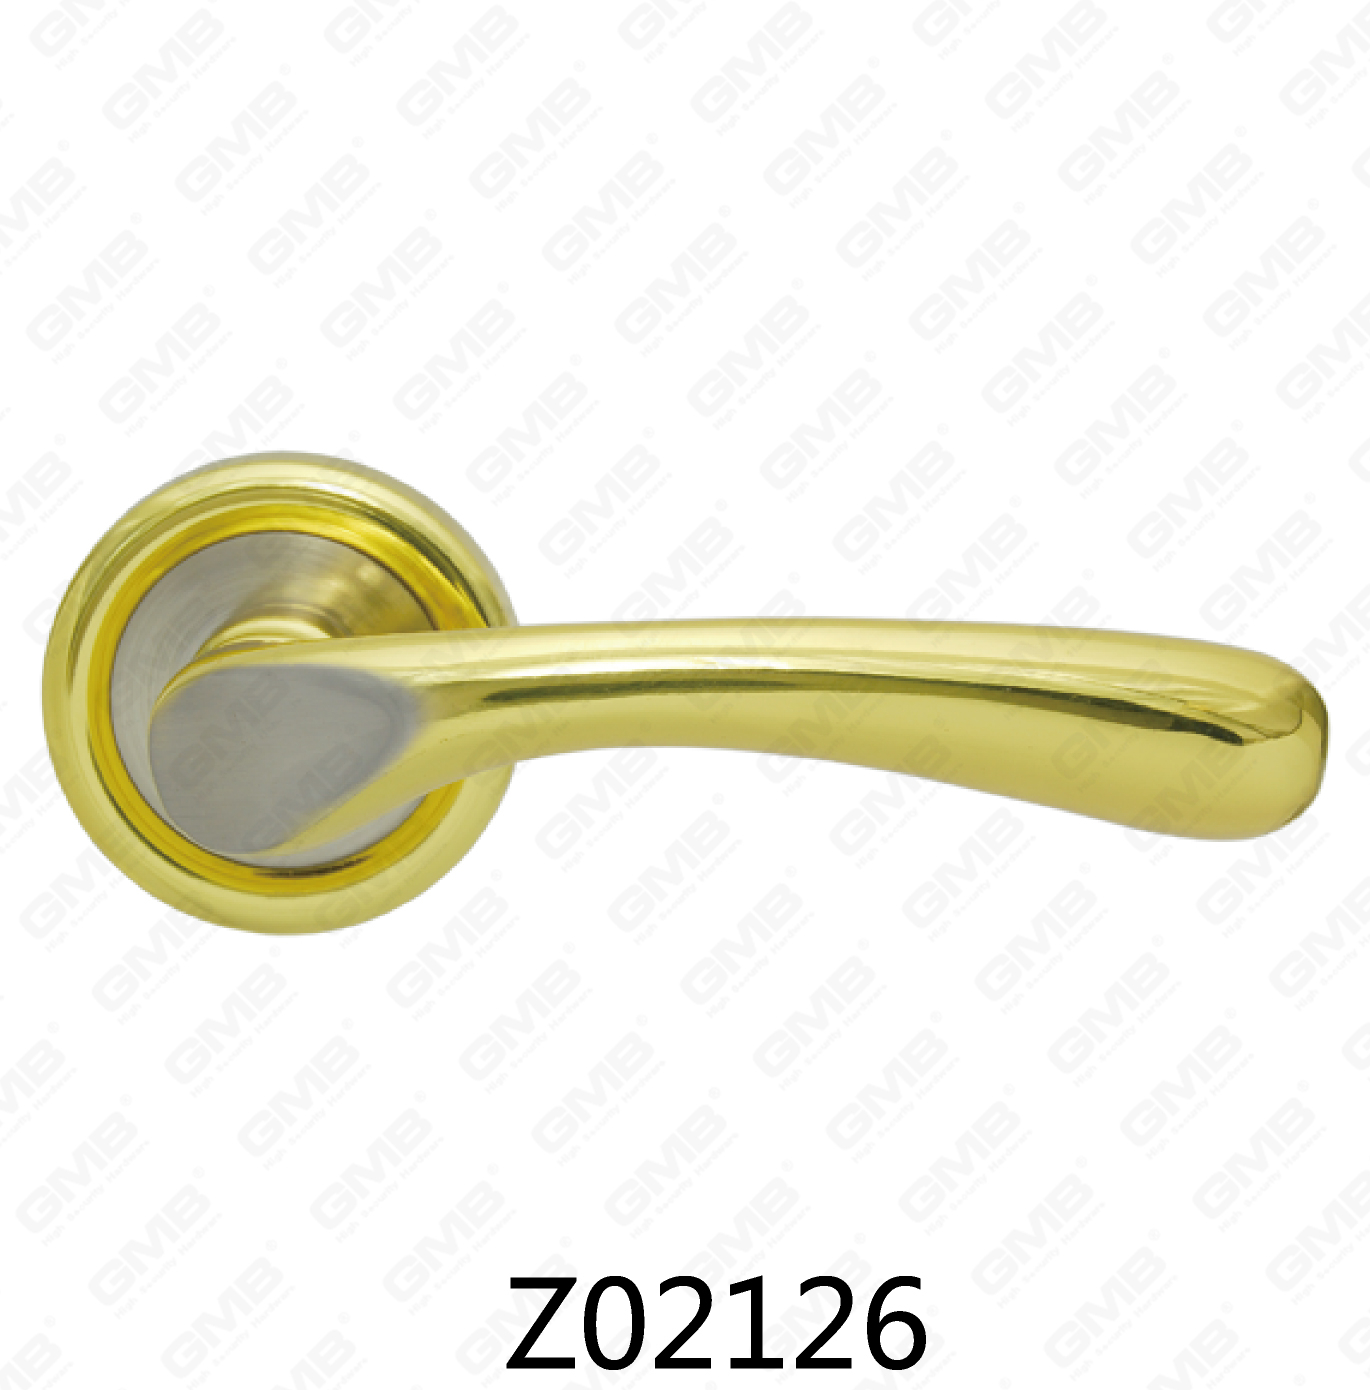 ידית דלת רוזטת אלומיניום מסגסוגת אבץ של Zamak עם רוזטה עגולה (Z02126)